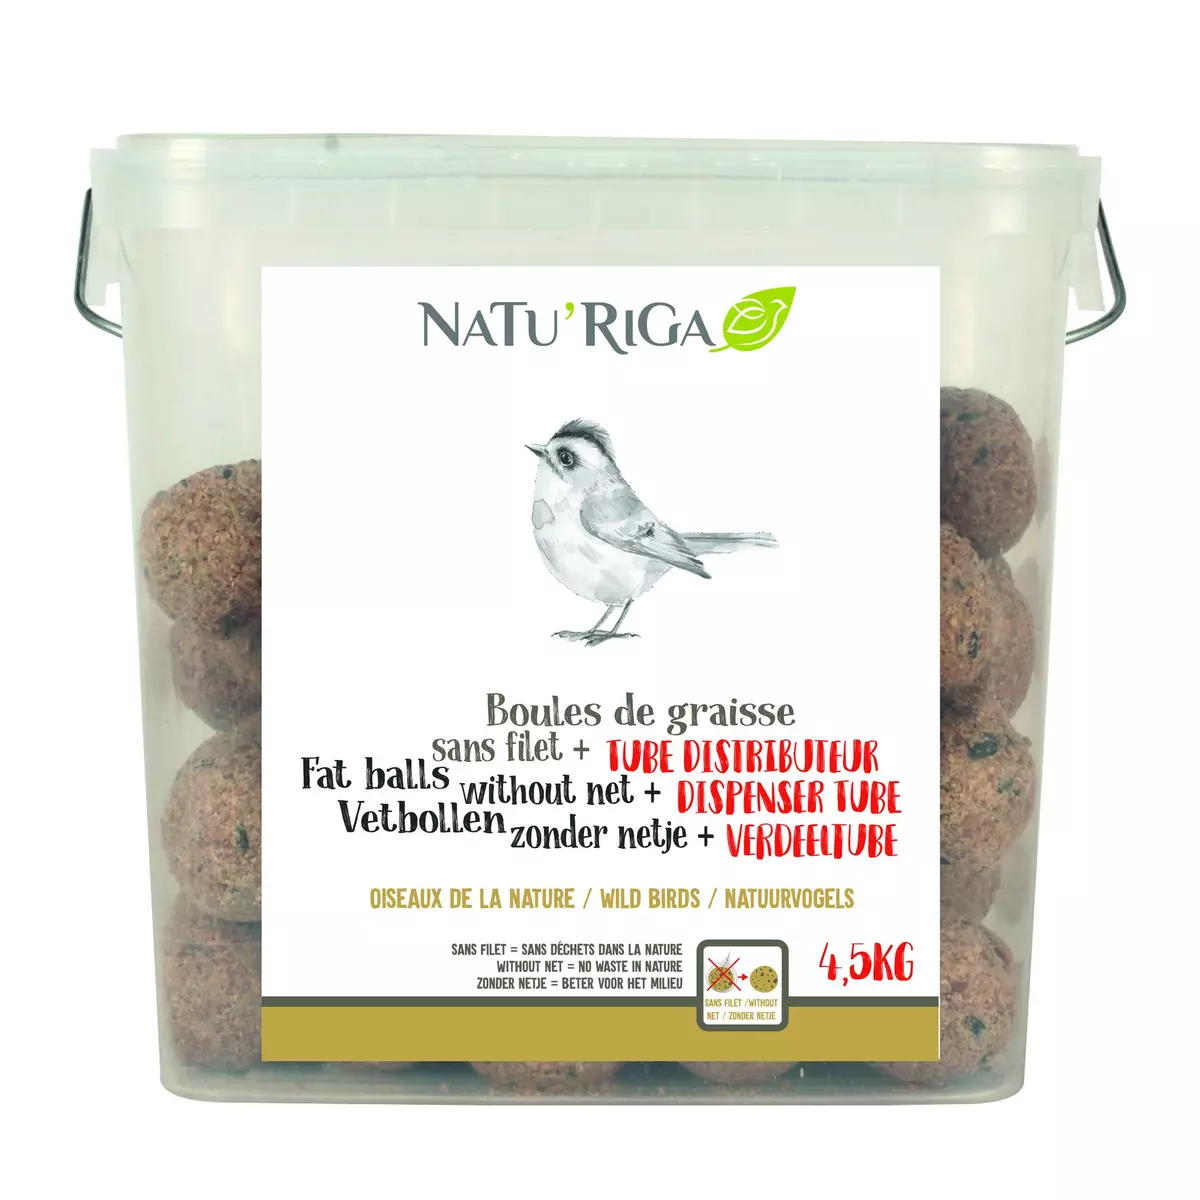 NATU'RIGA Boules de graisse sans filet 4.5kg pas cher 